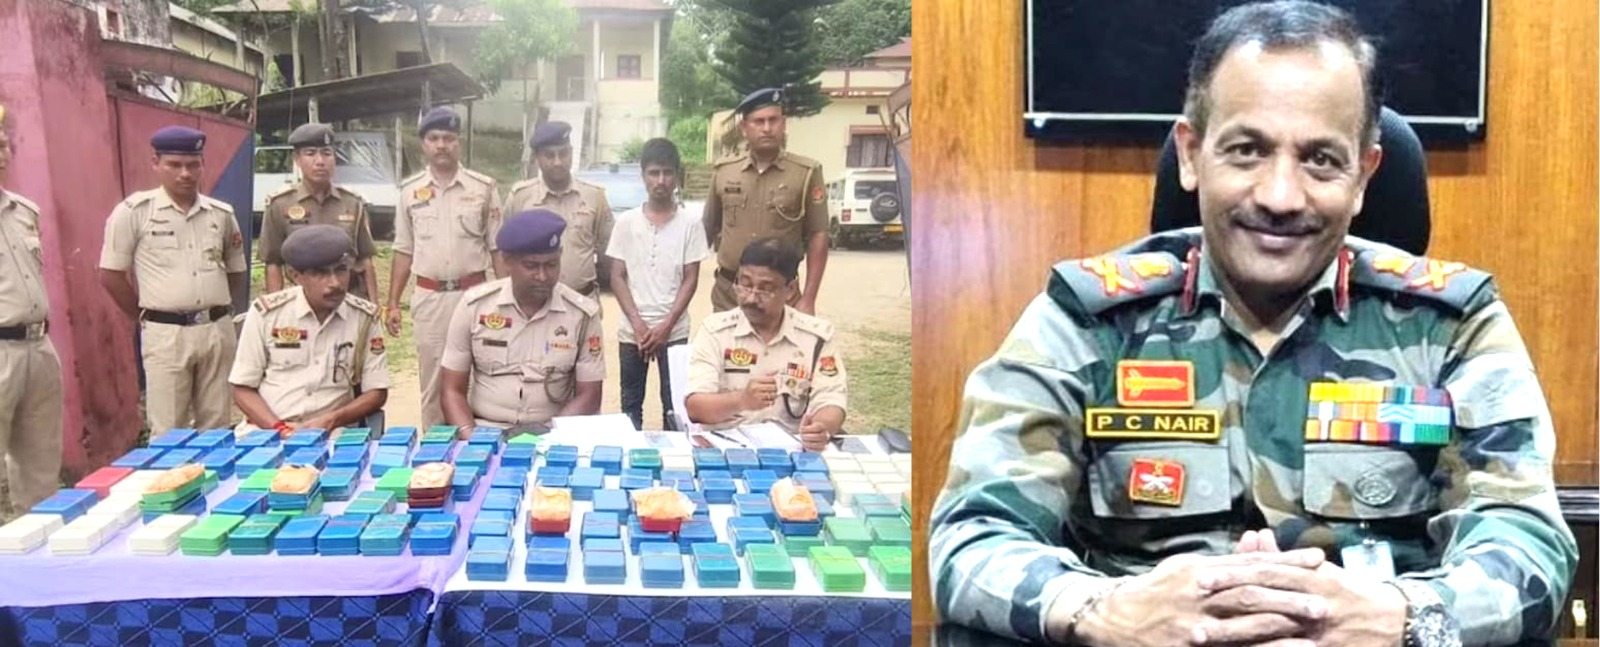 त्रिपुरा में 10 करोड़ रुपये की हेरोइन के साथ पांच लोग गिरफ्तार